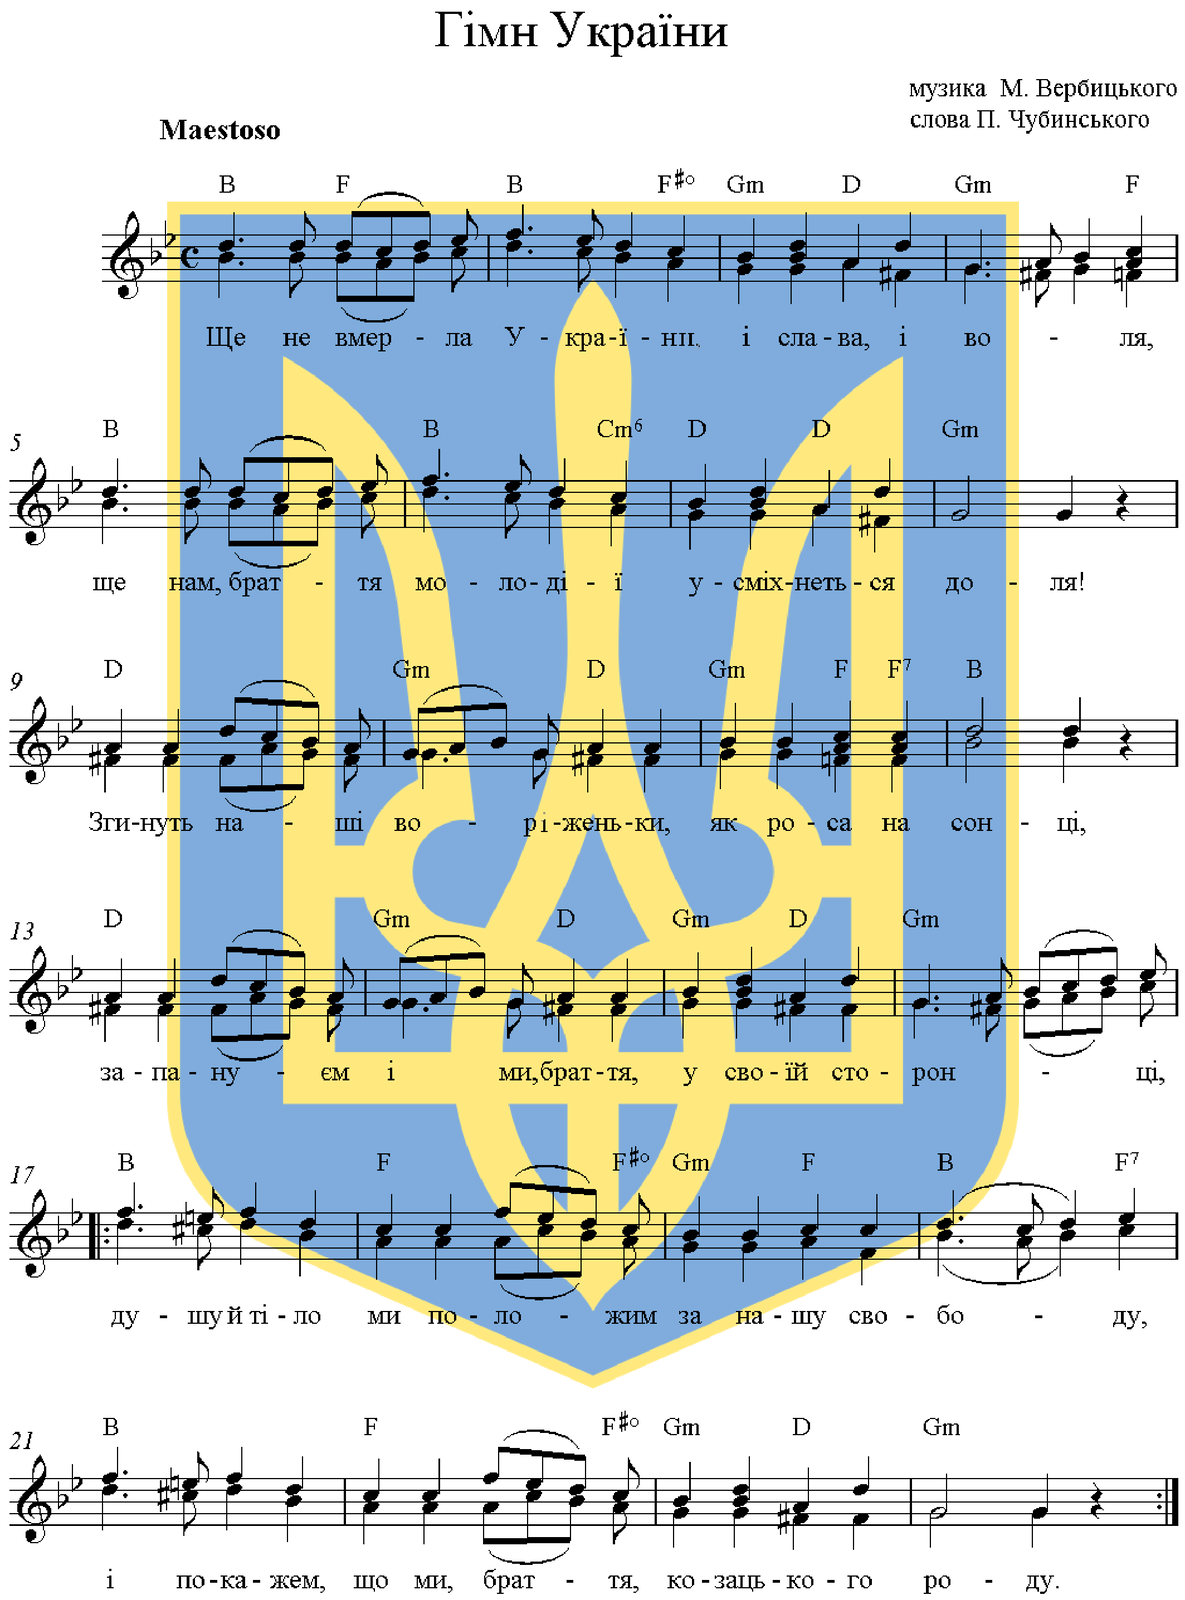 Zapis nutowy hymnu państwowego Ukrainy. W tle widać herb. Metrum cztery czwarte. Nad nutami znajduje się wskazówka wykonawcza maestoso, czyli majestatycznie. Tytuł i słowa hymnu zapisane są cyrylicą.